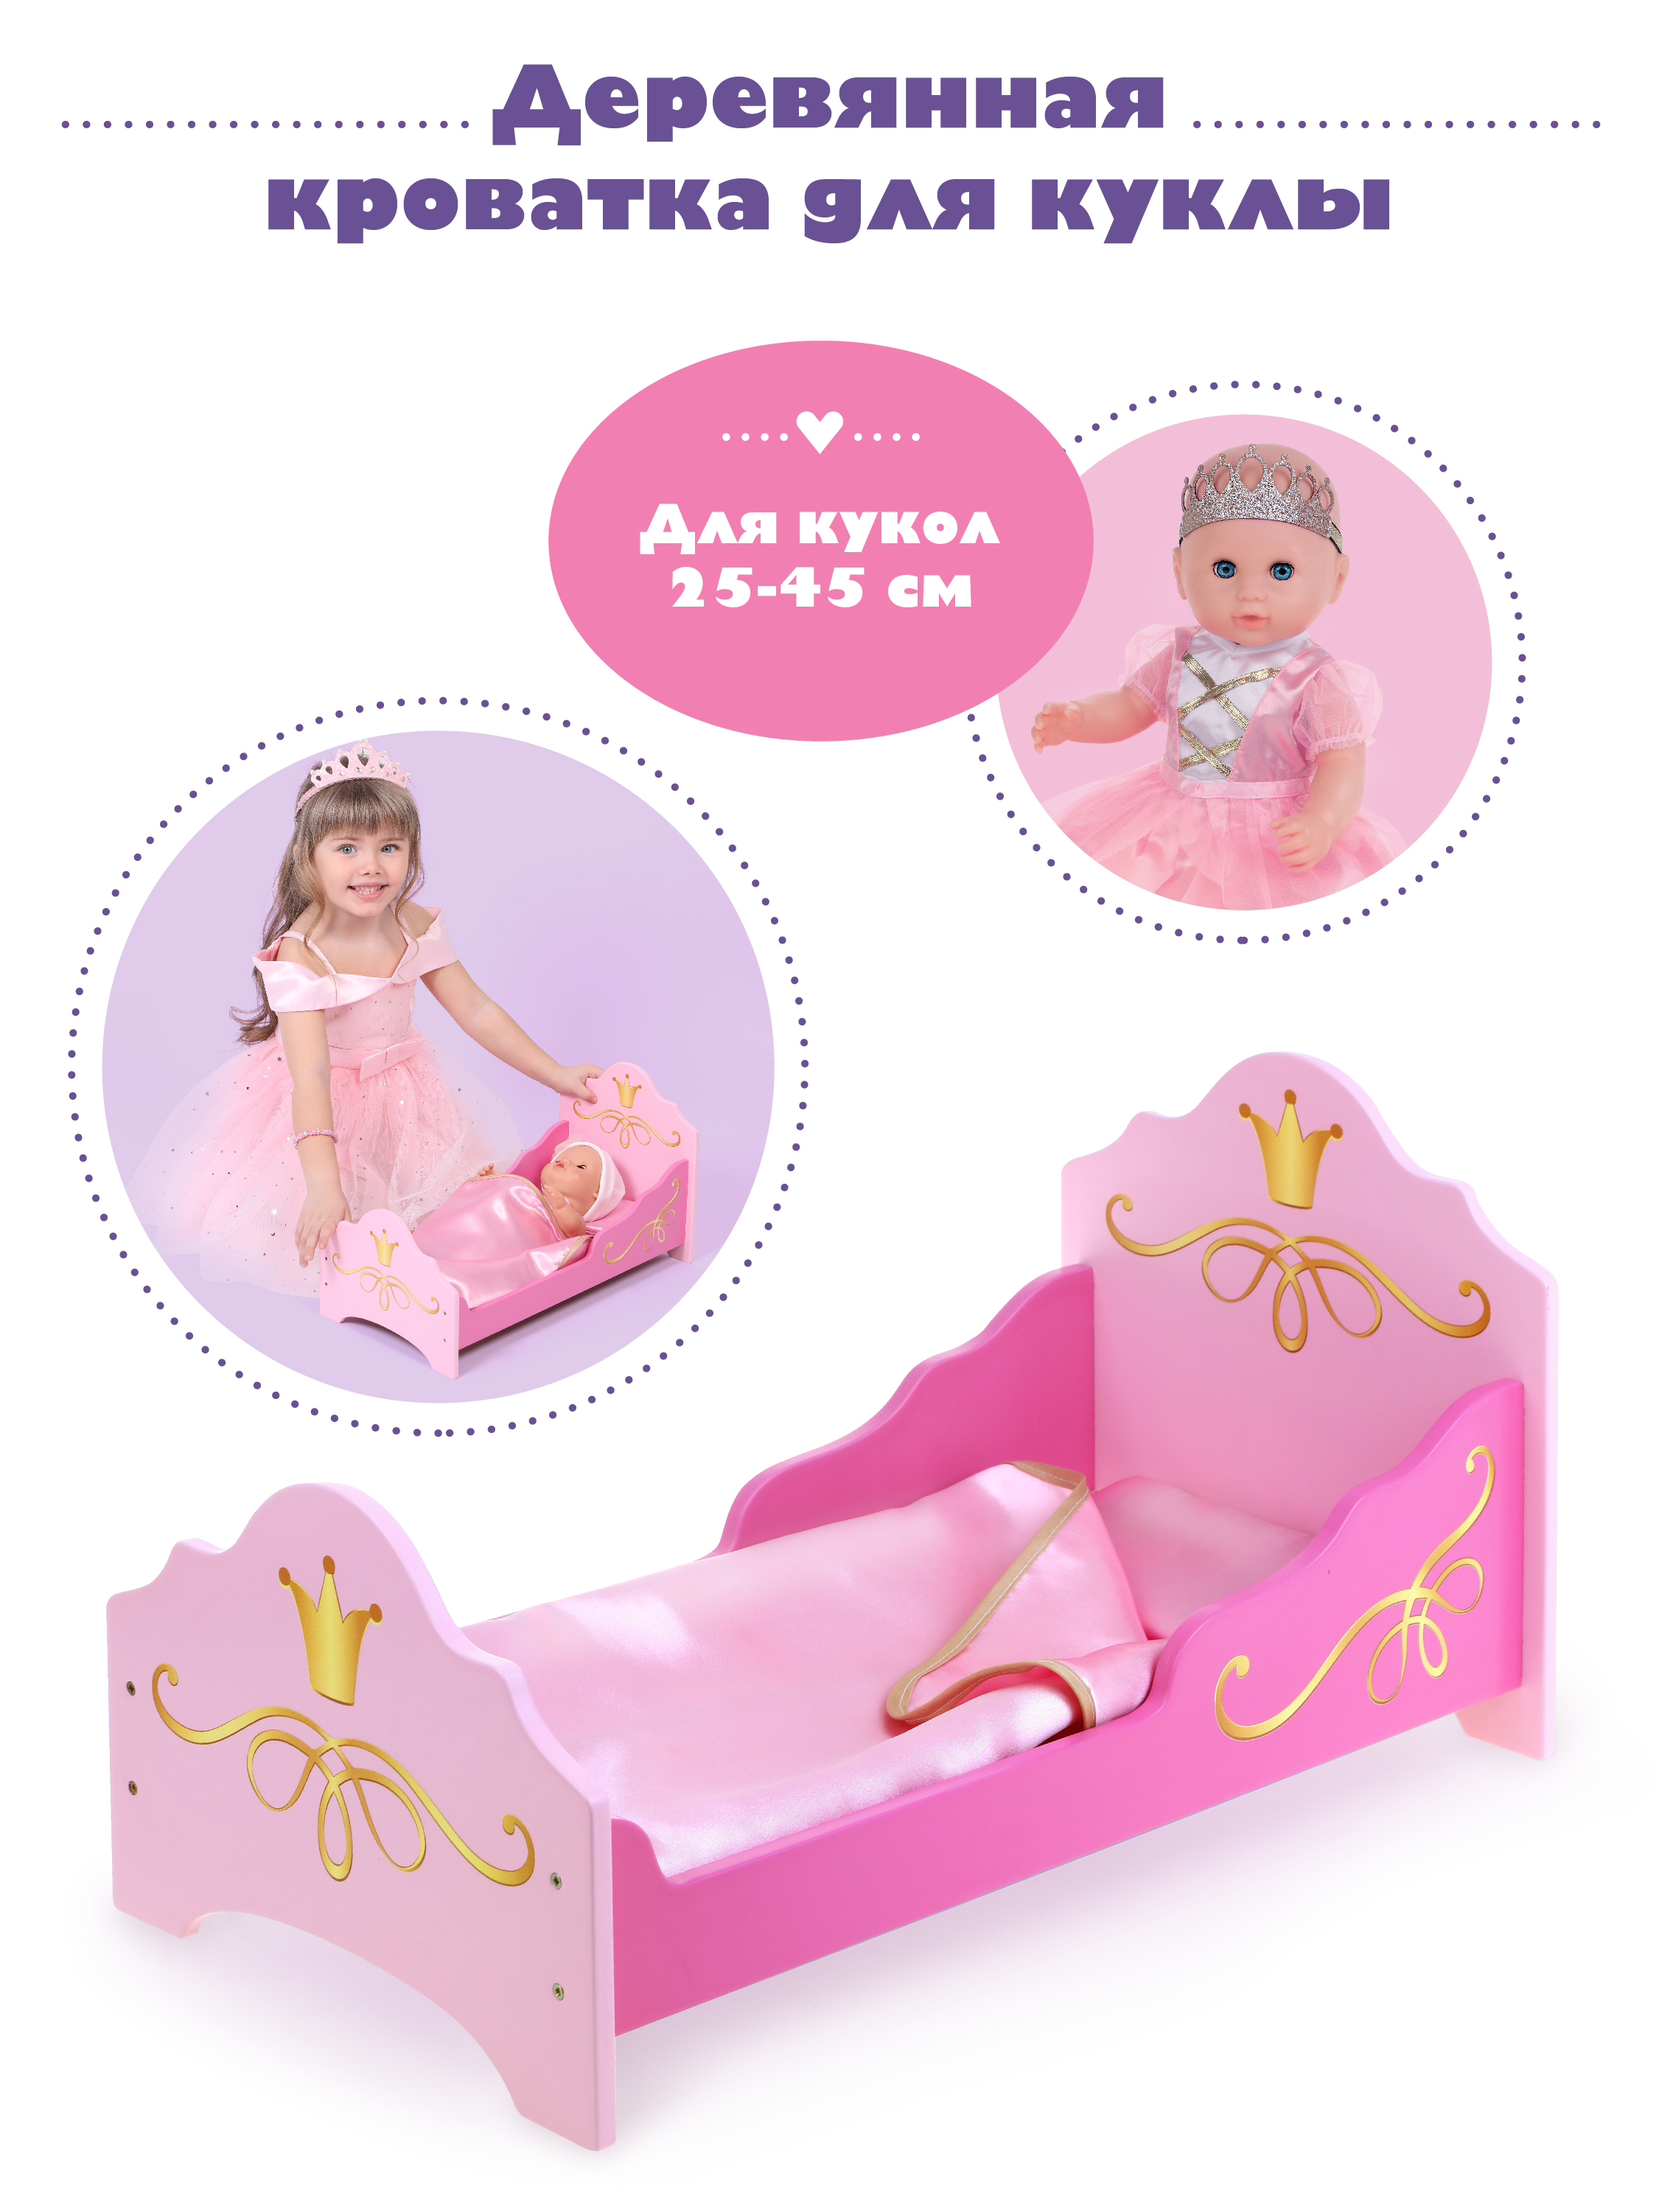 Кроватка Mary Poppins для куклы пупса мебель кукольная люлька кукол. Принцесса 67398 - фото 2